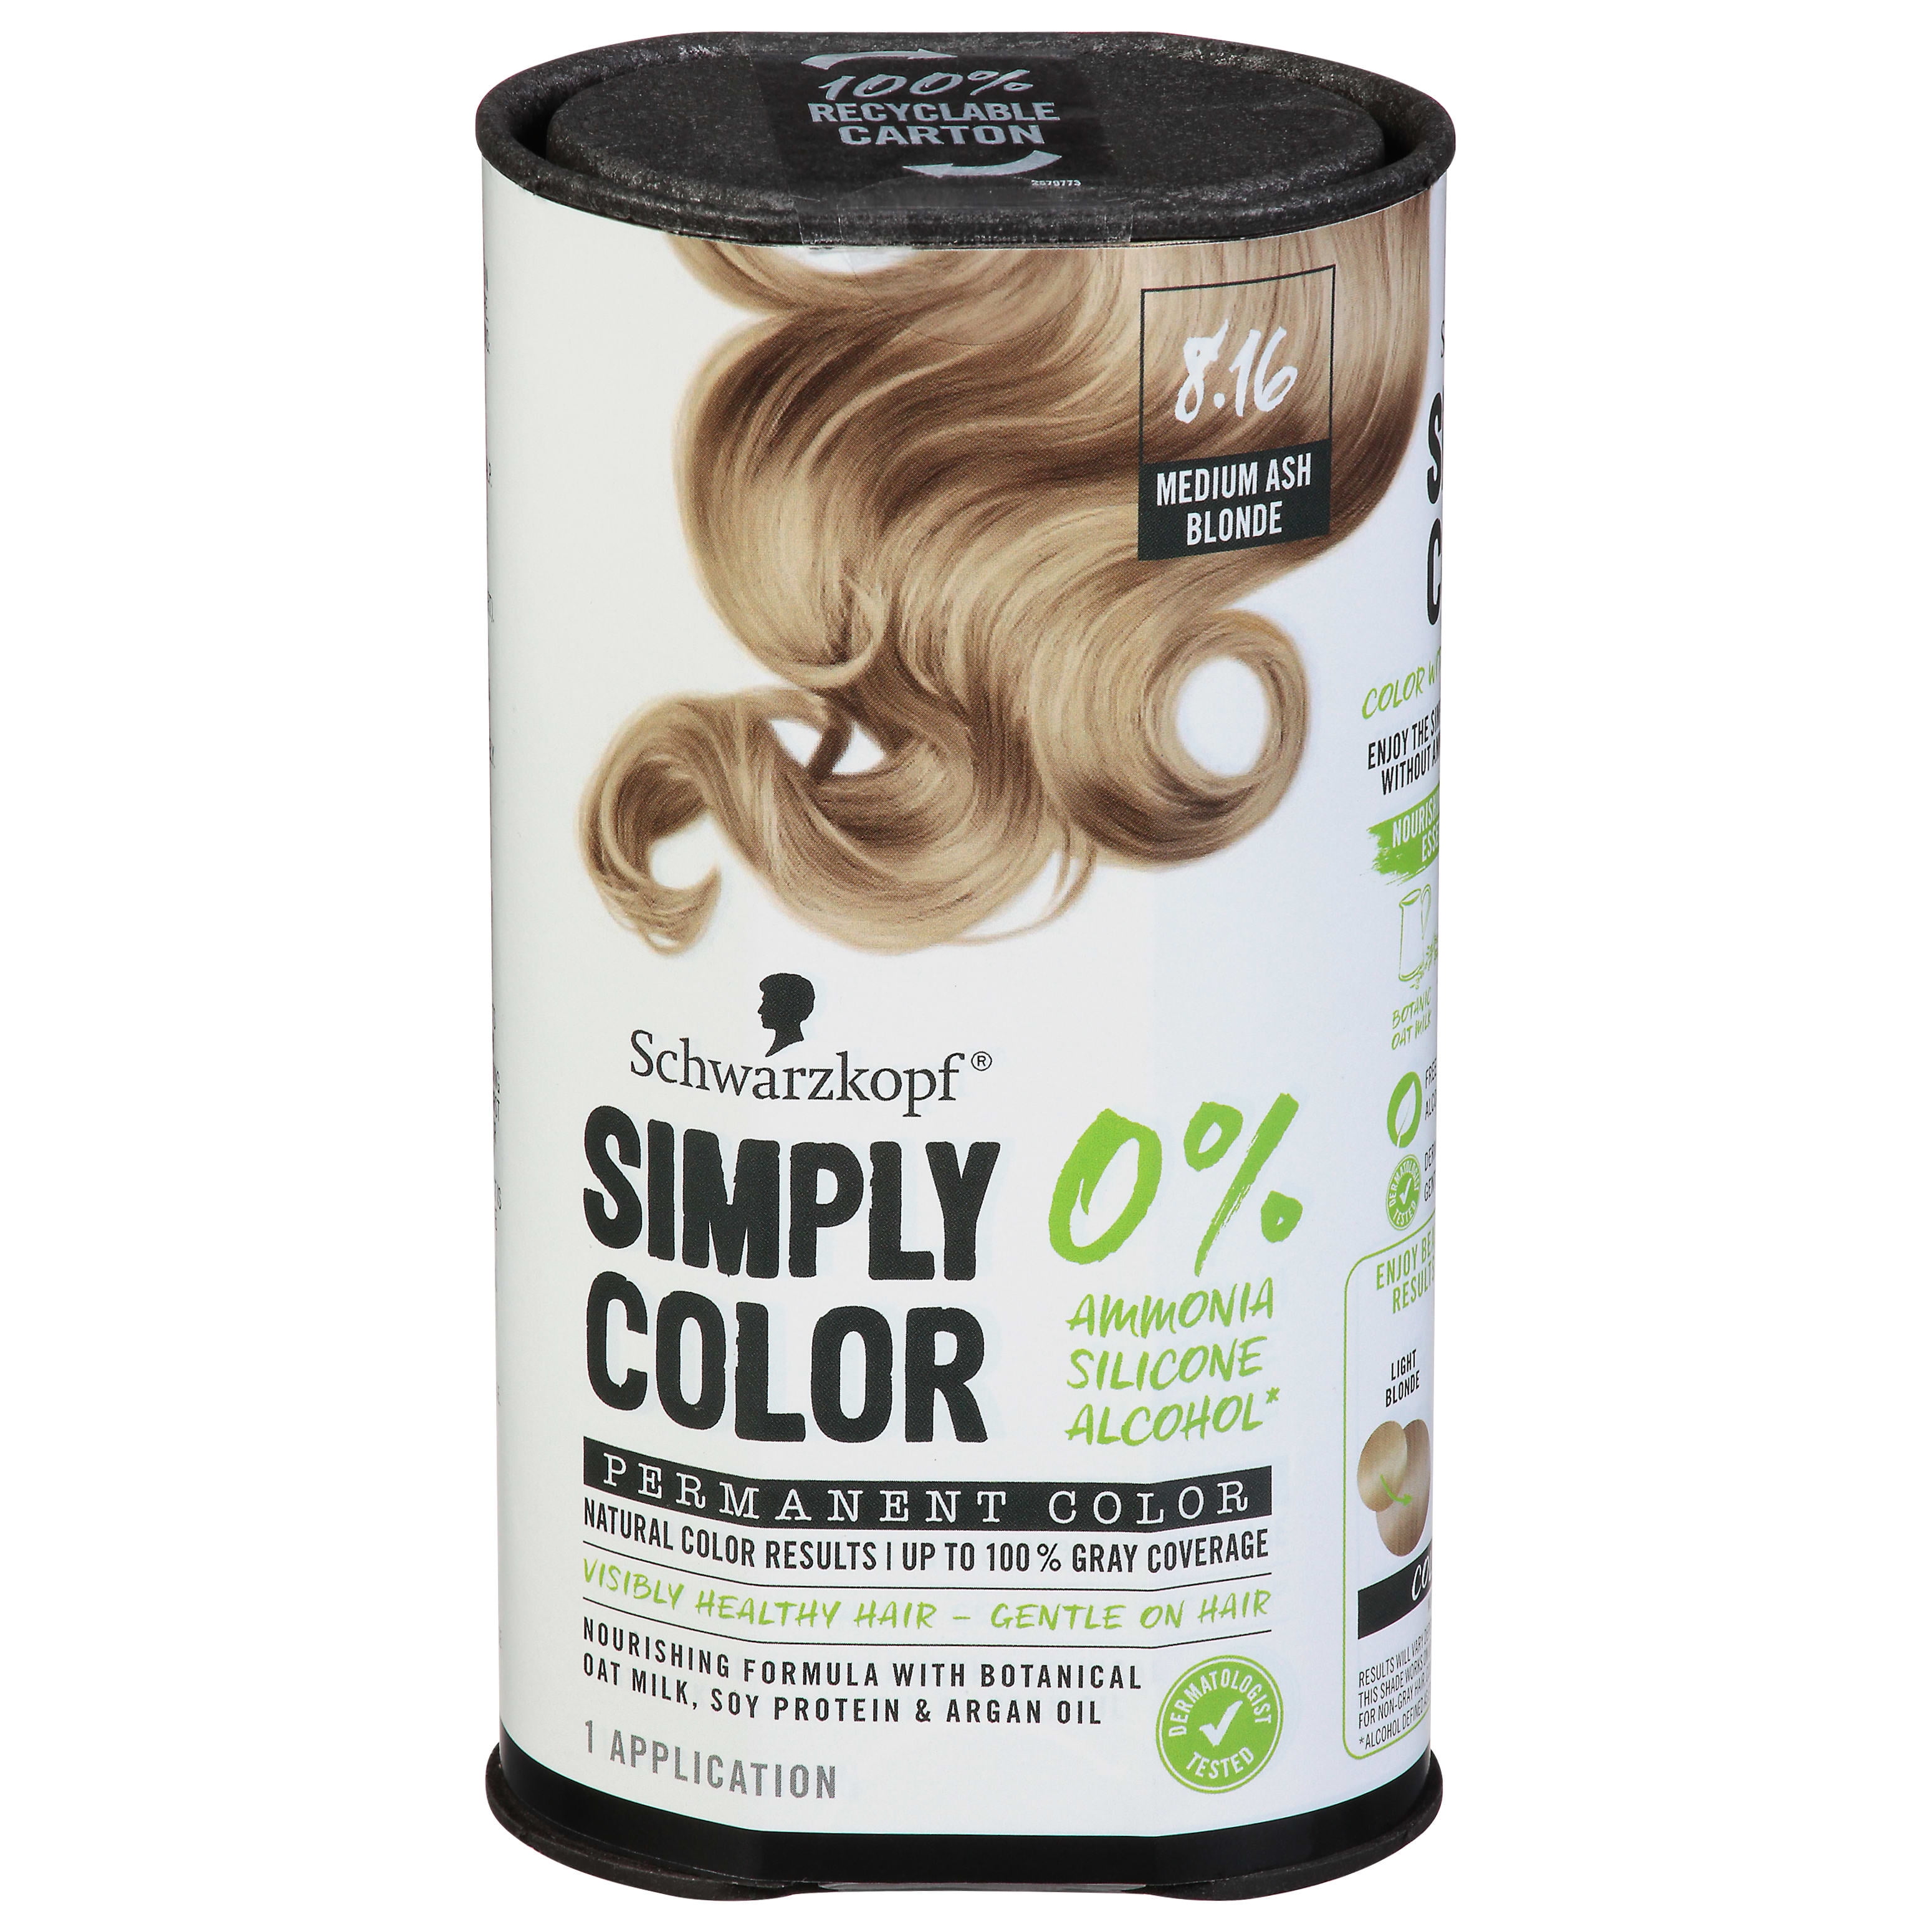 Schwarzkopf Simply Color Permanent Color, Medium Ash Blonde 8.16